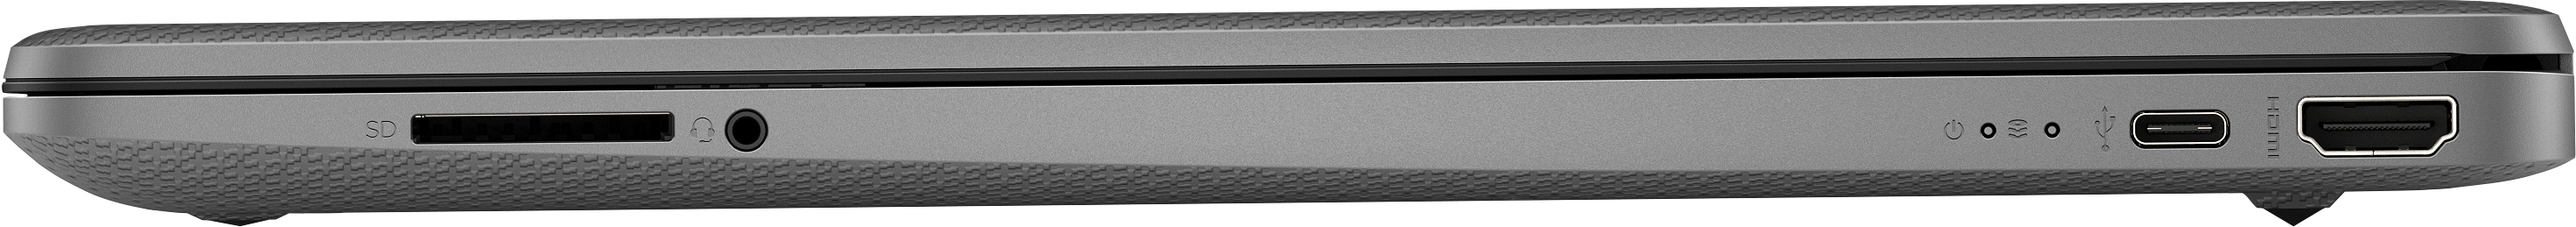 Notebook HP 15s-eq2083nl 5300U Computer portatile 39,6 cm (15.6